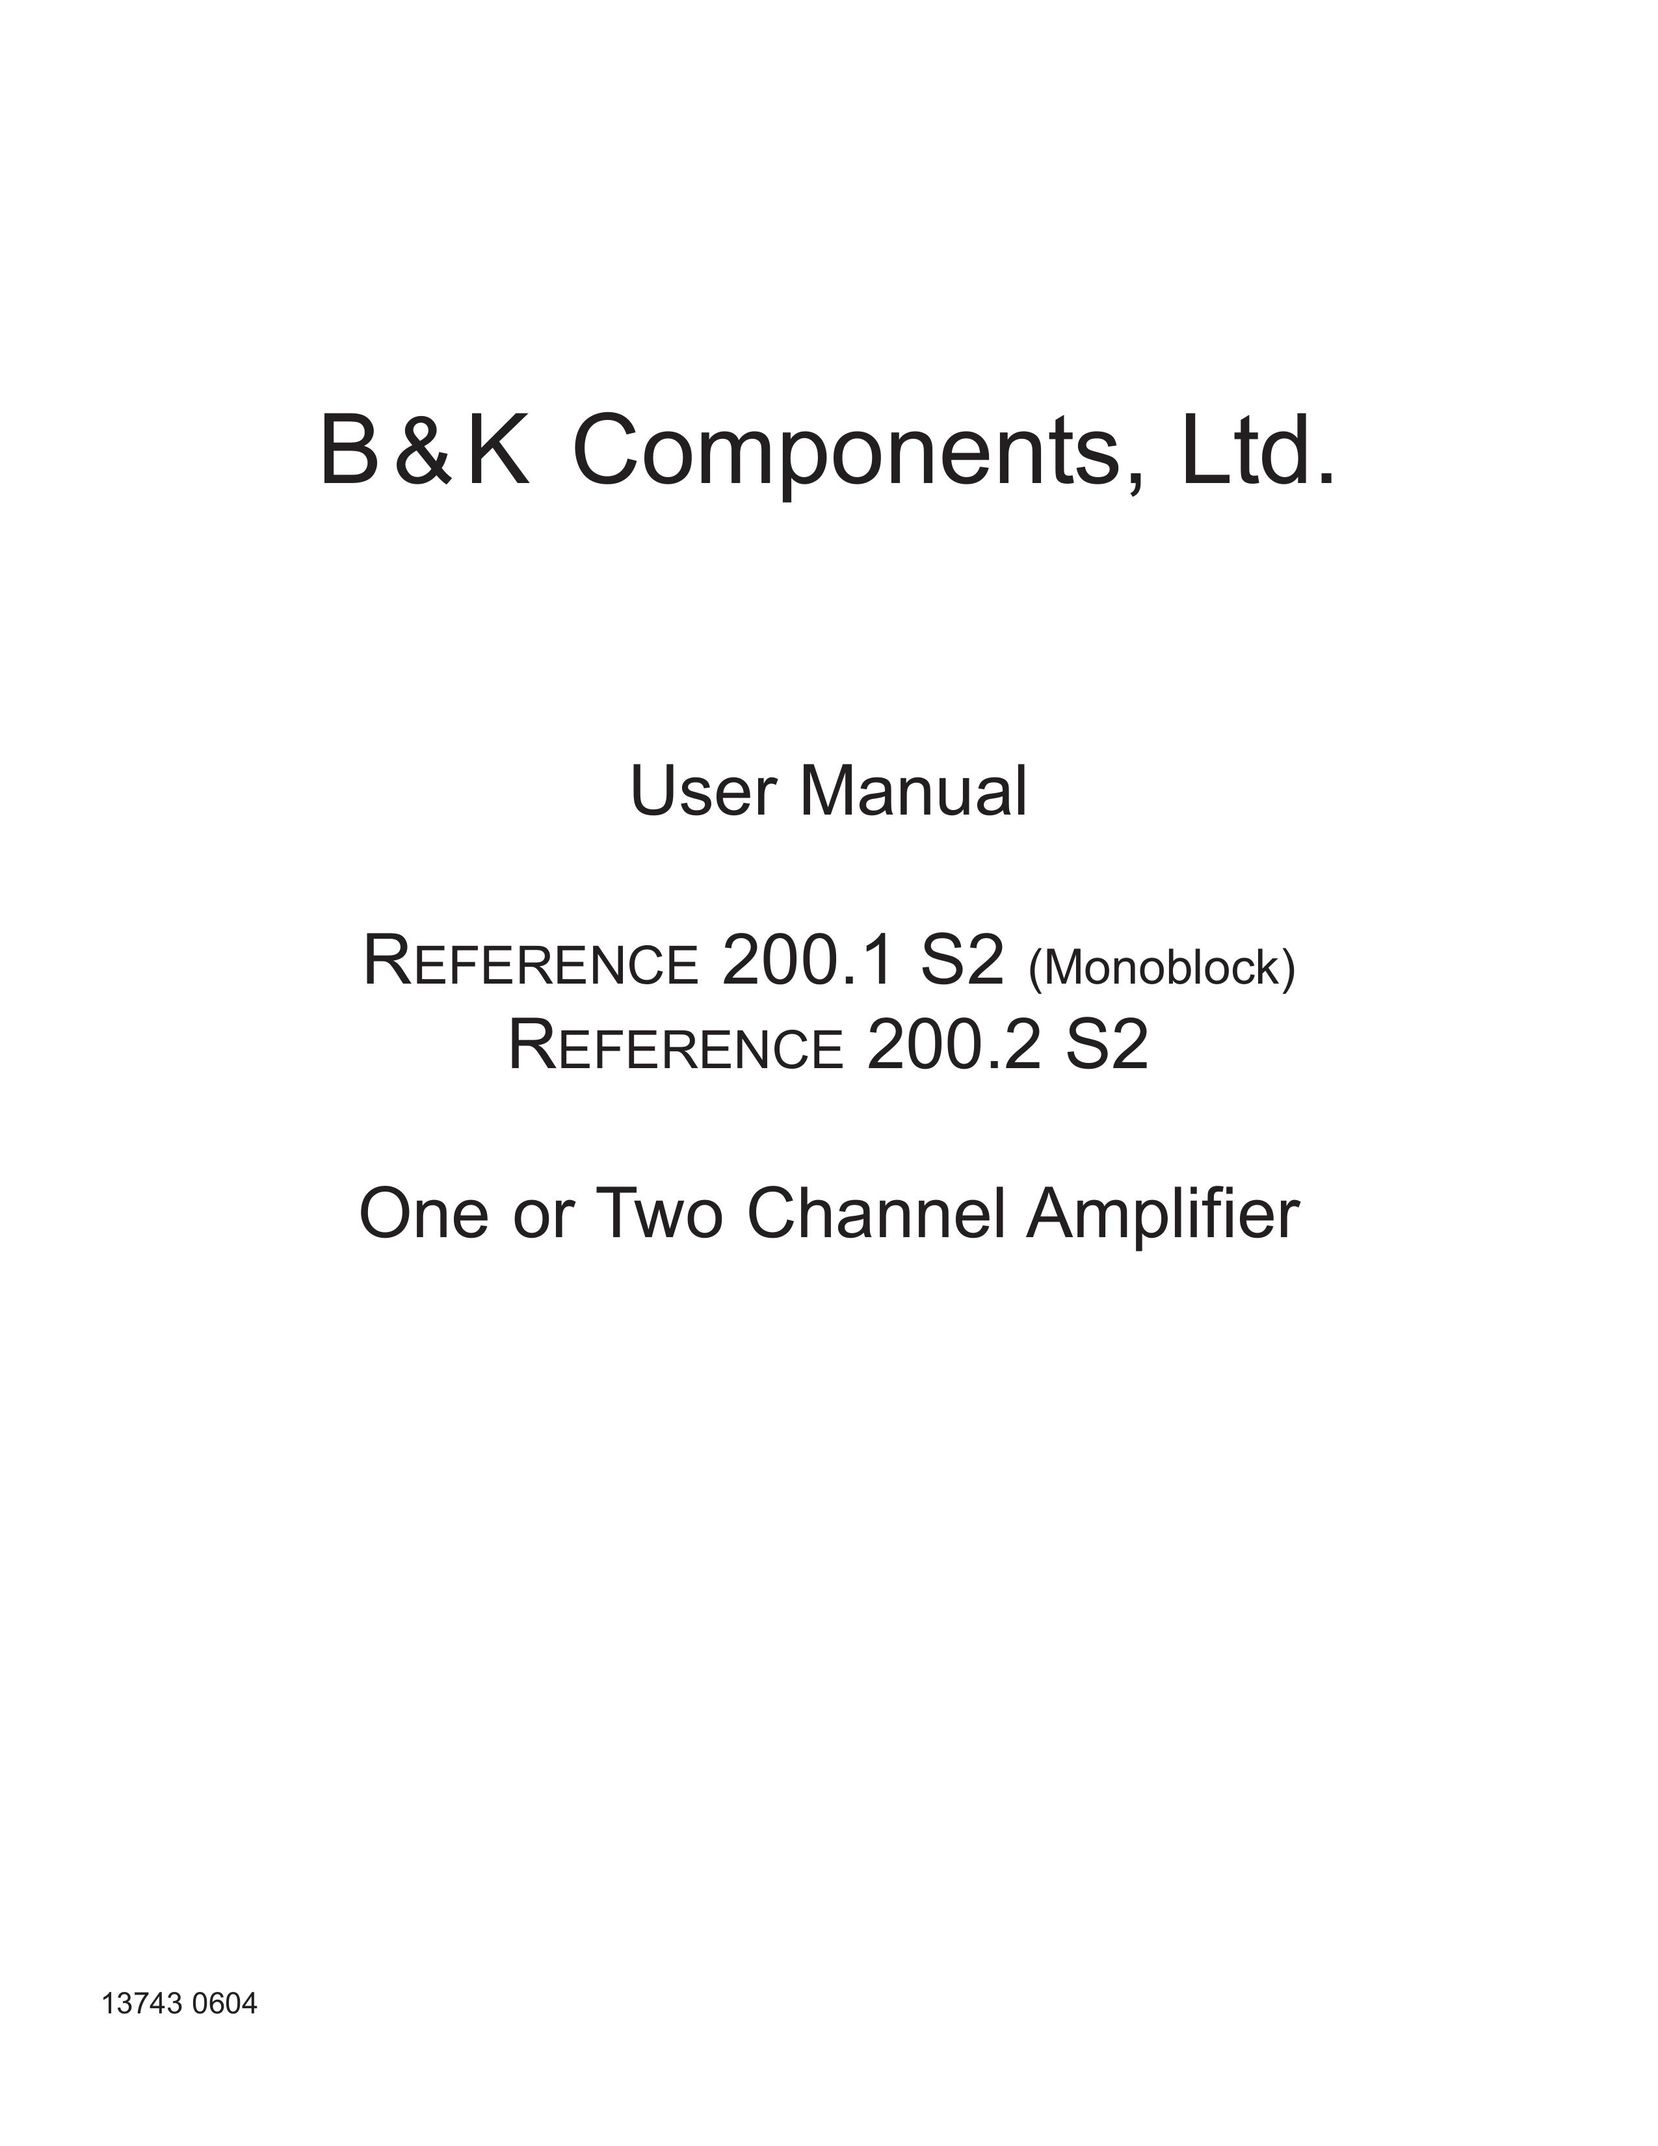 B&K 200.1 S2 Stereo Amplifier User Manual